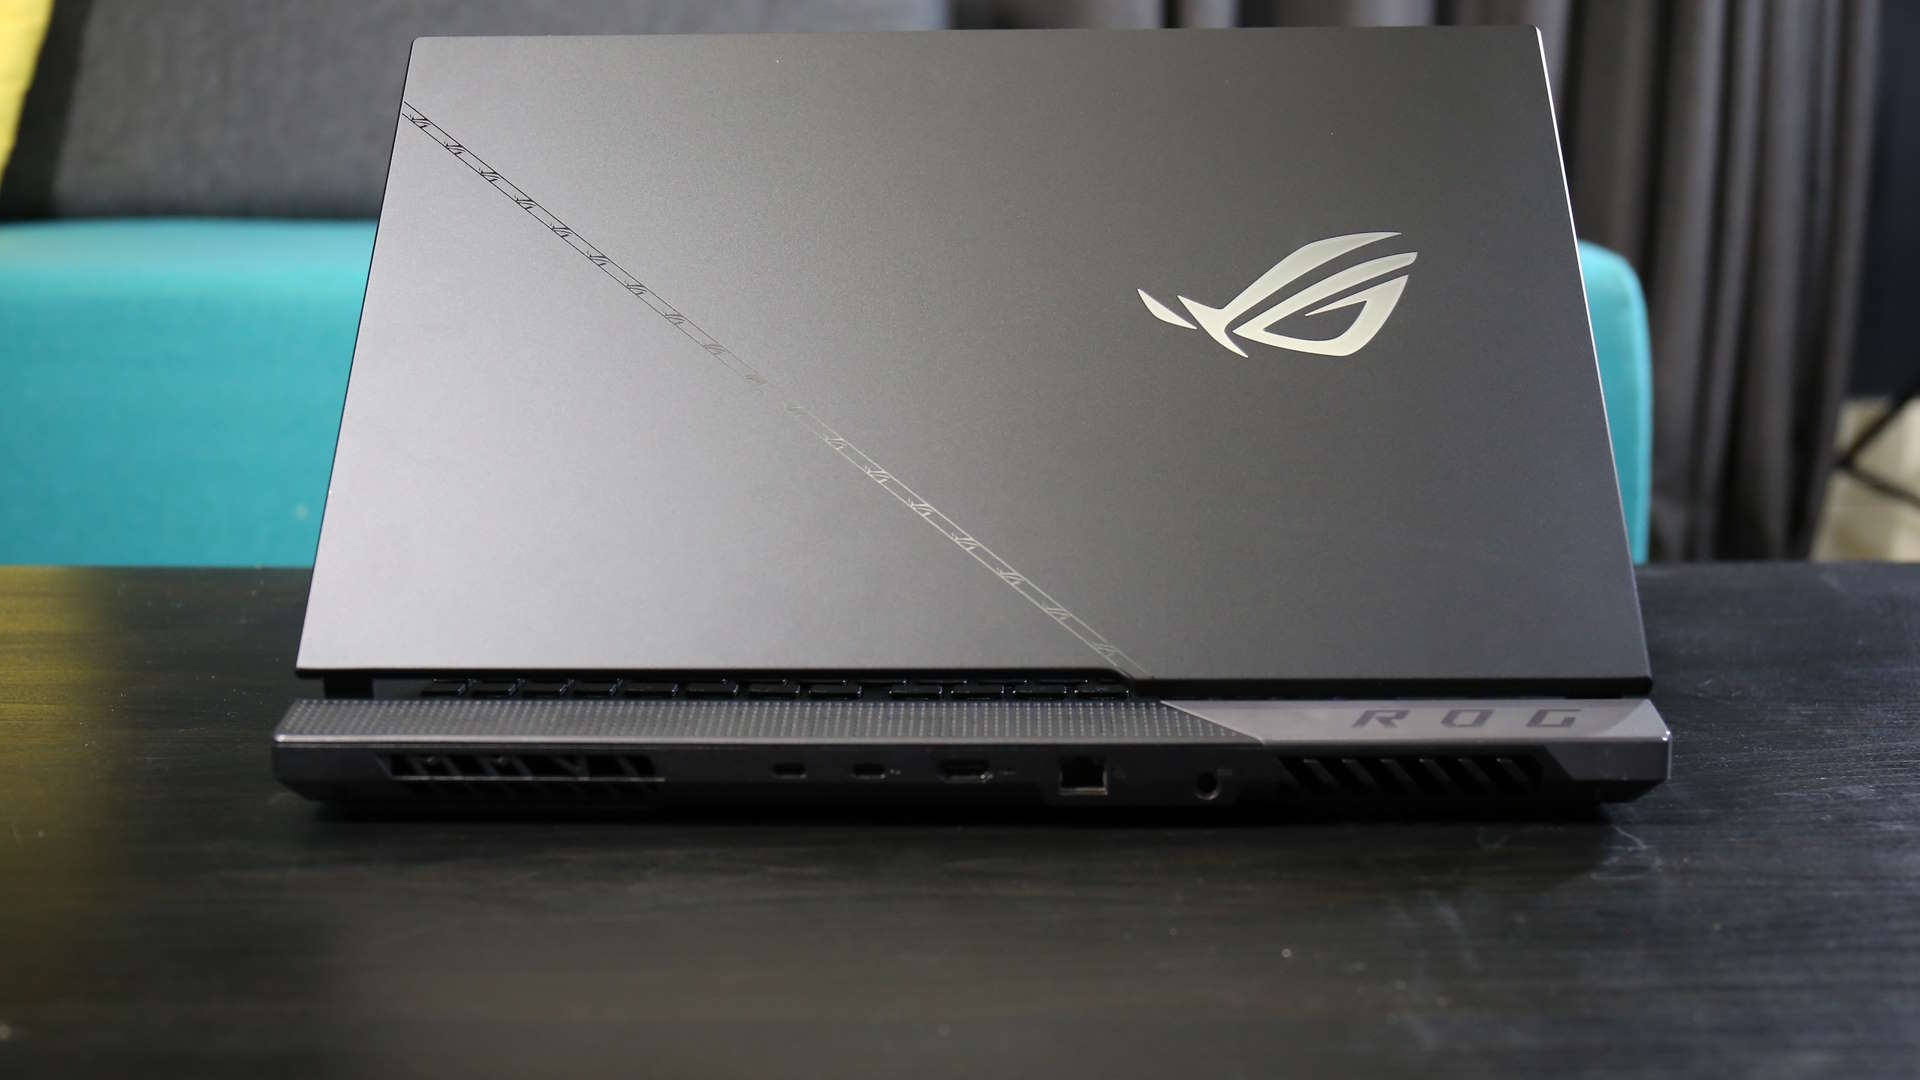 Asus ROG Strix Scar 17 gaming laptop